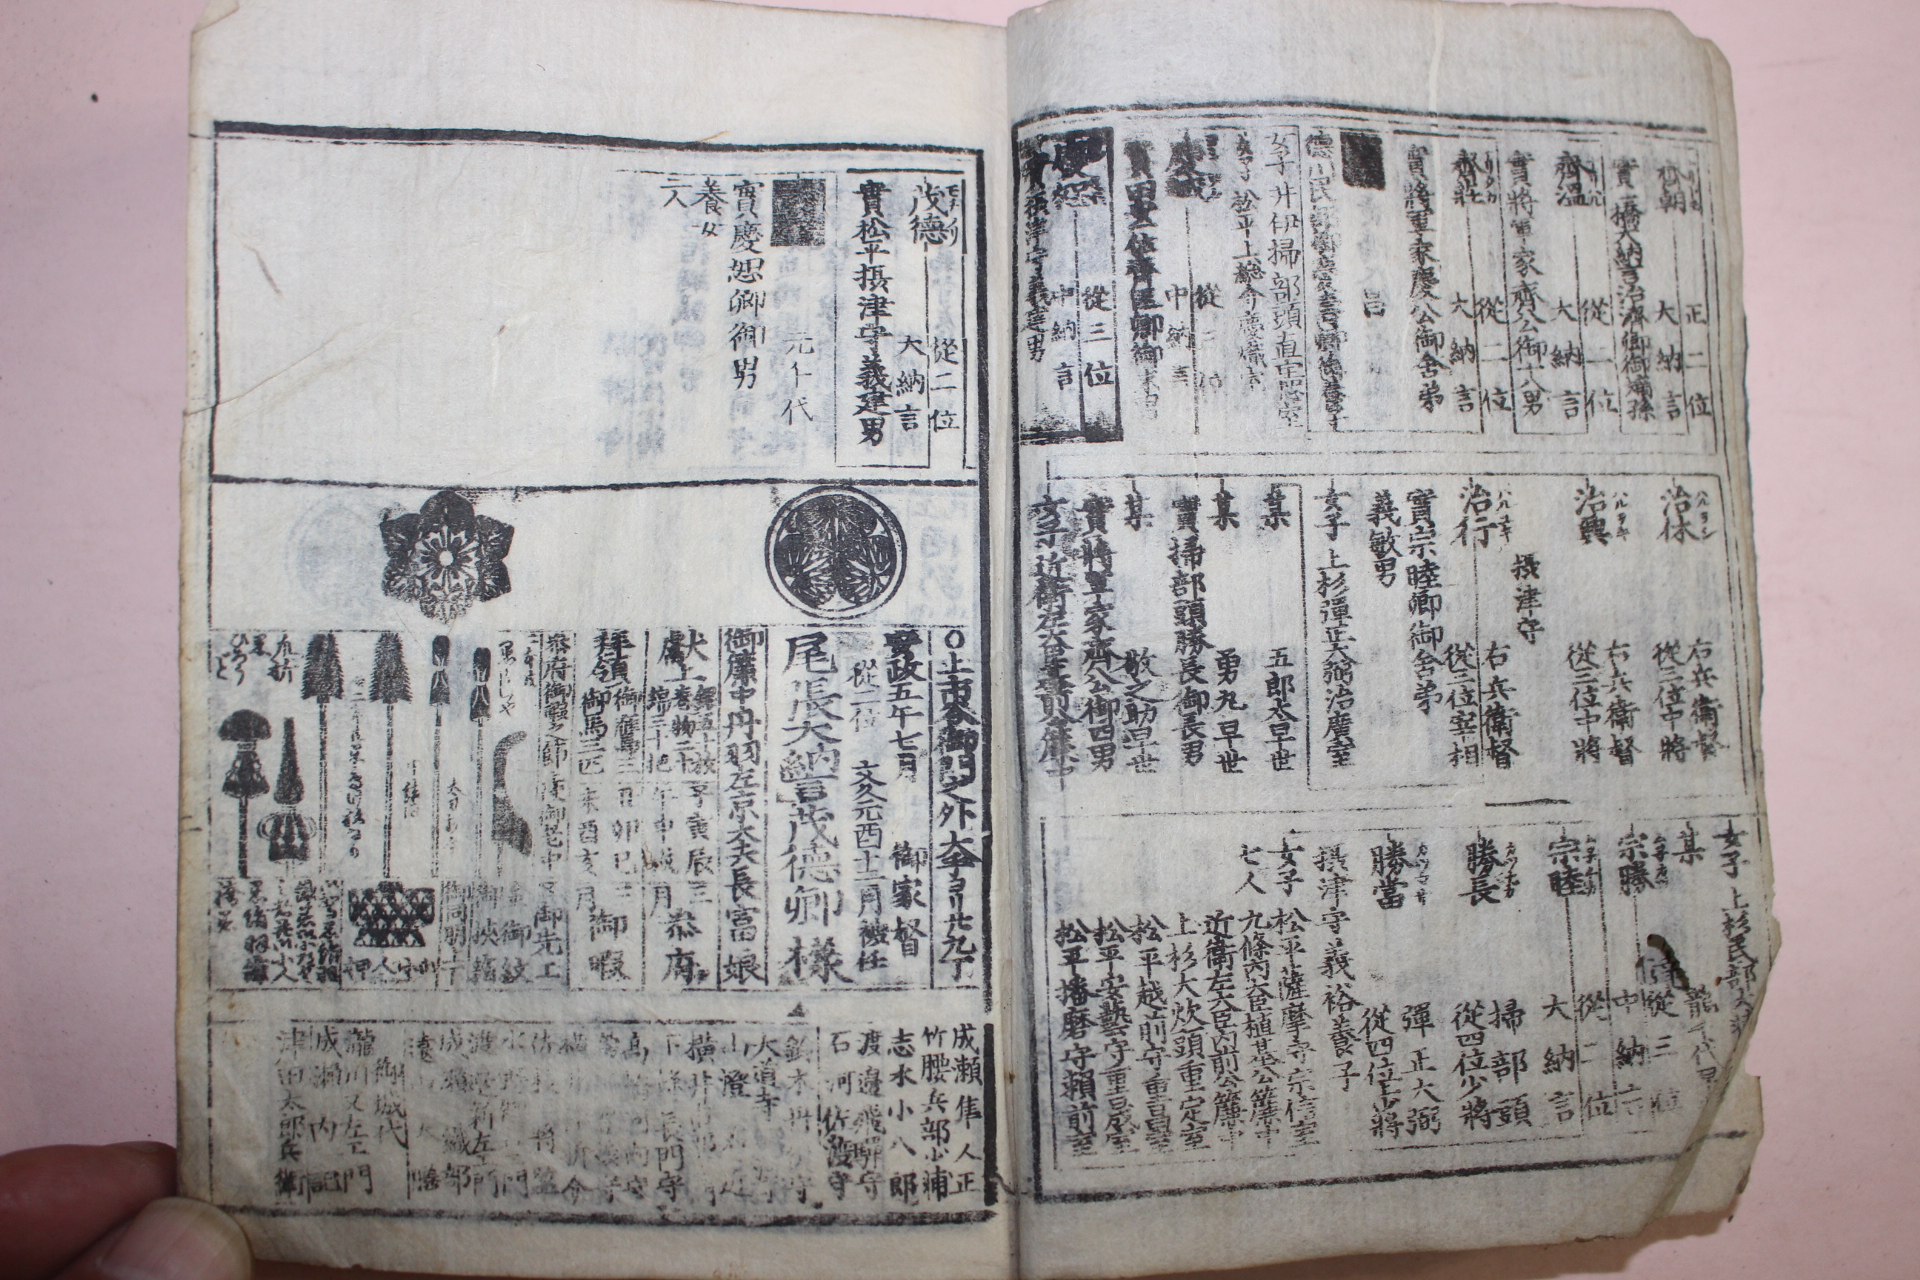 에도시기 일본목판본 강호시기의 문중의 마크와 각종무기류가 열거된 책